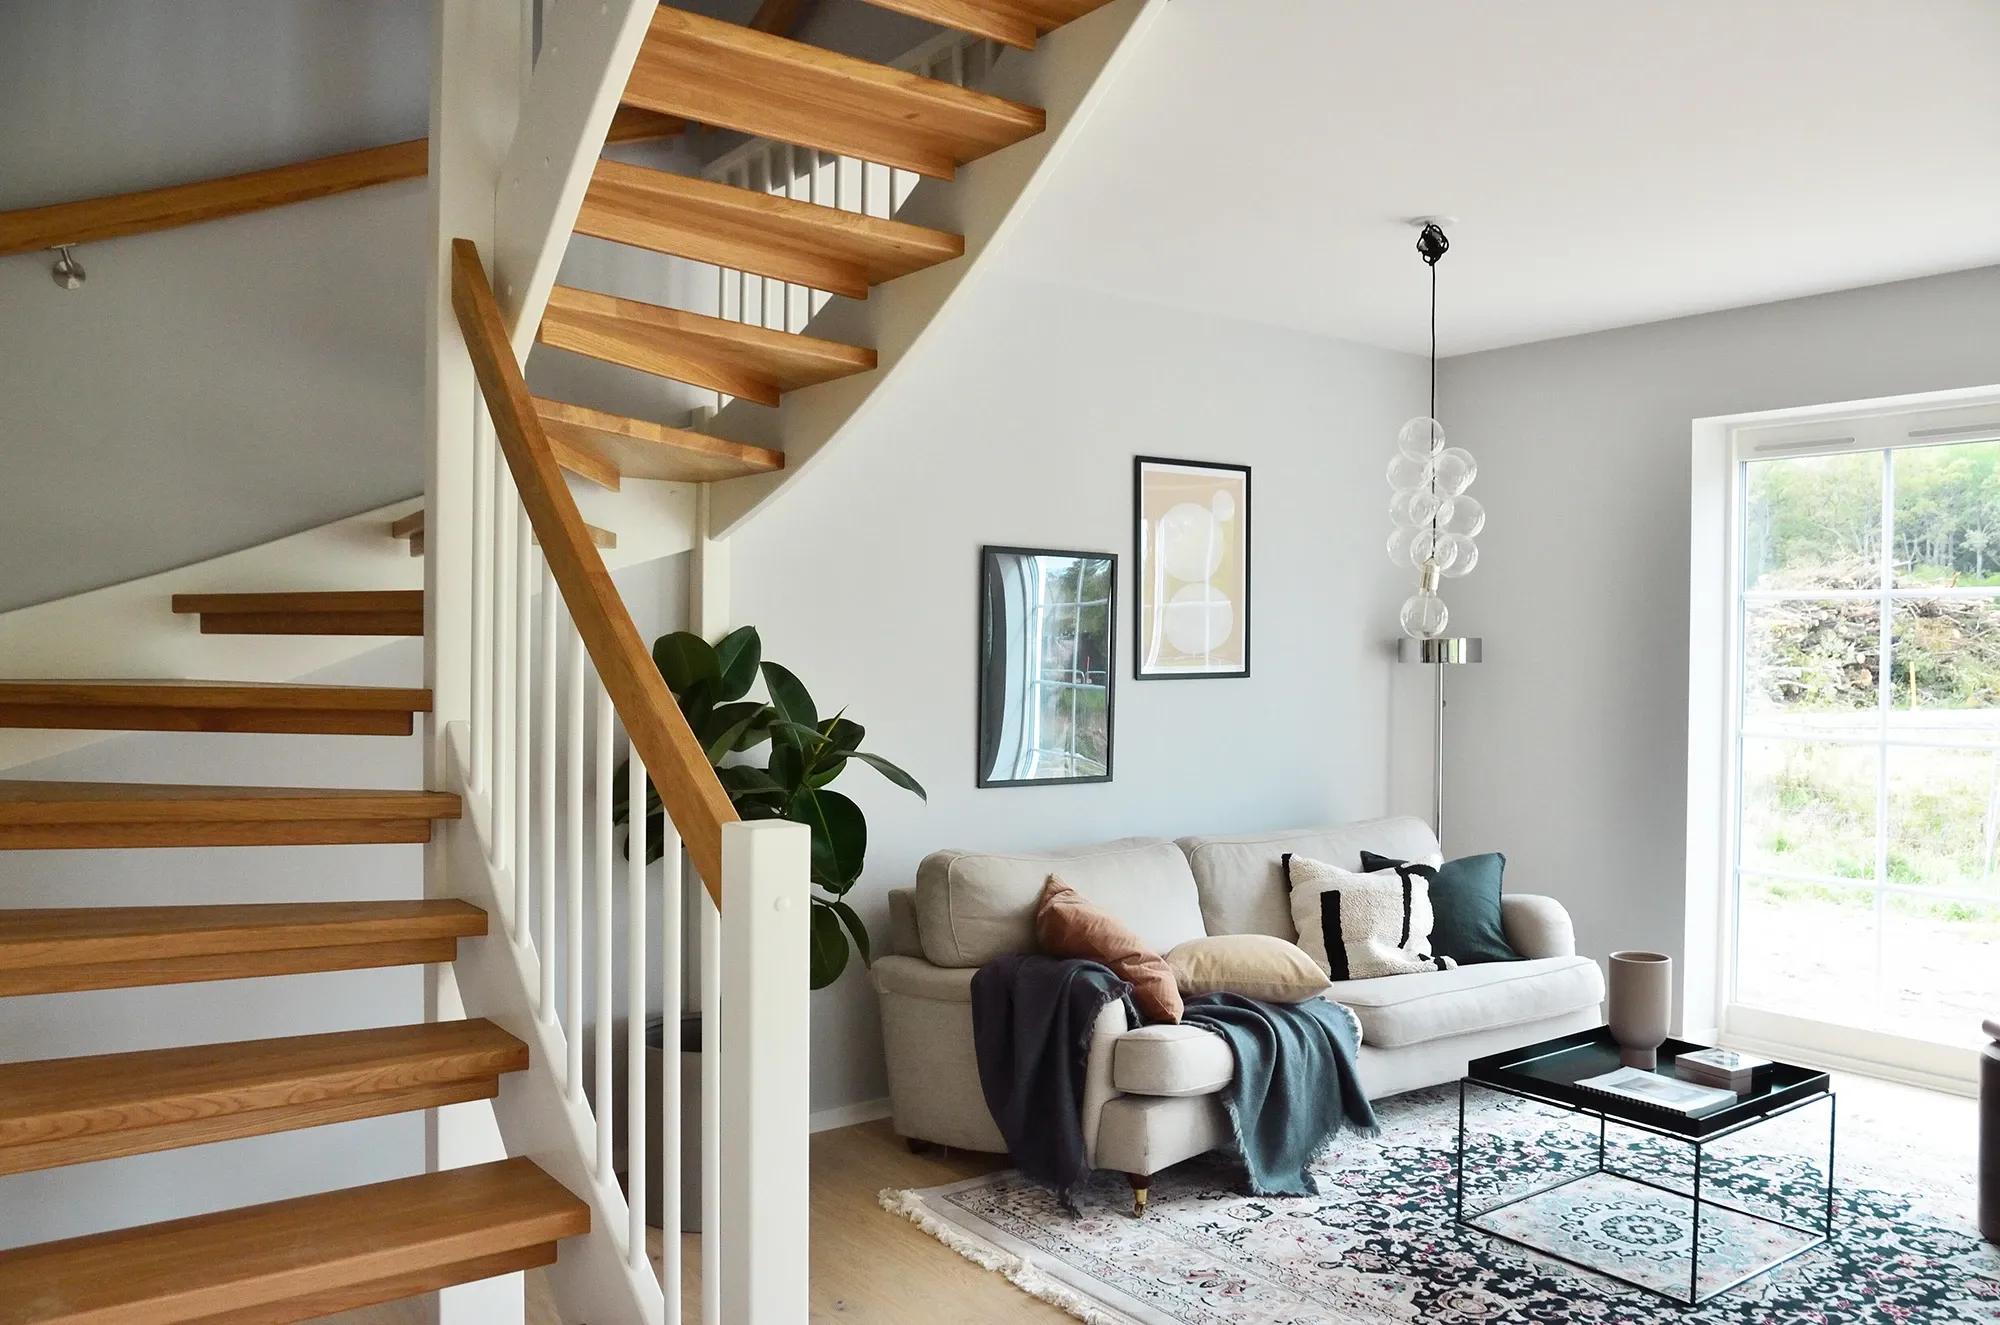 Miljöbild på vardagsrum med modern skandinavisk inredning där trapprenovering av trätrappa utförts av erfarna hantverkare